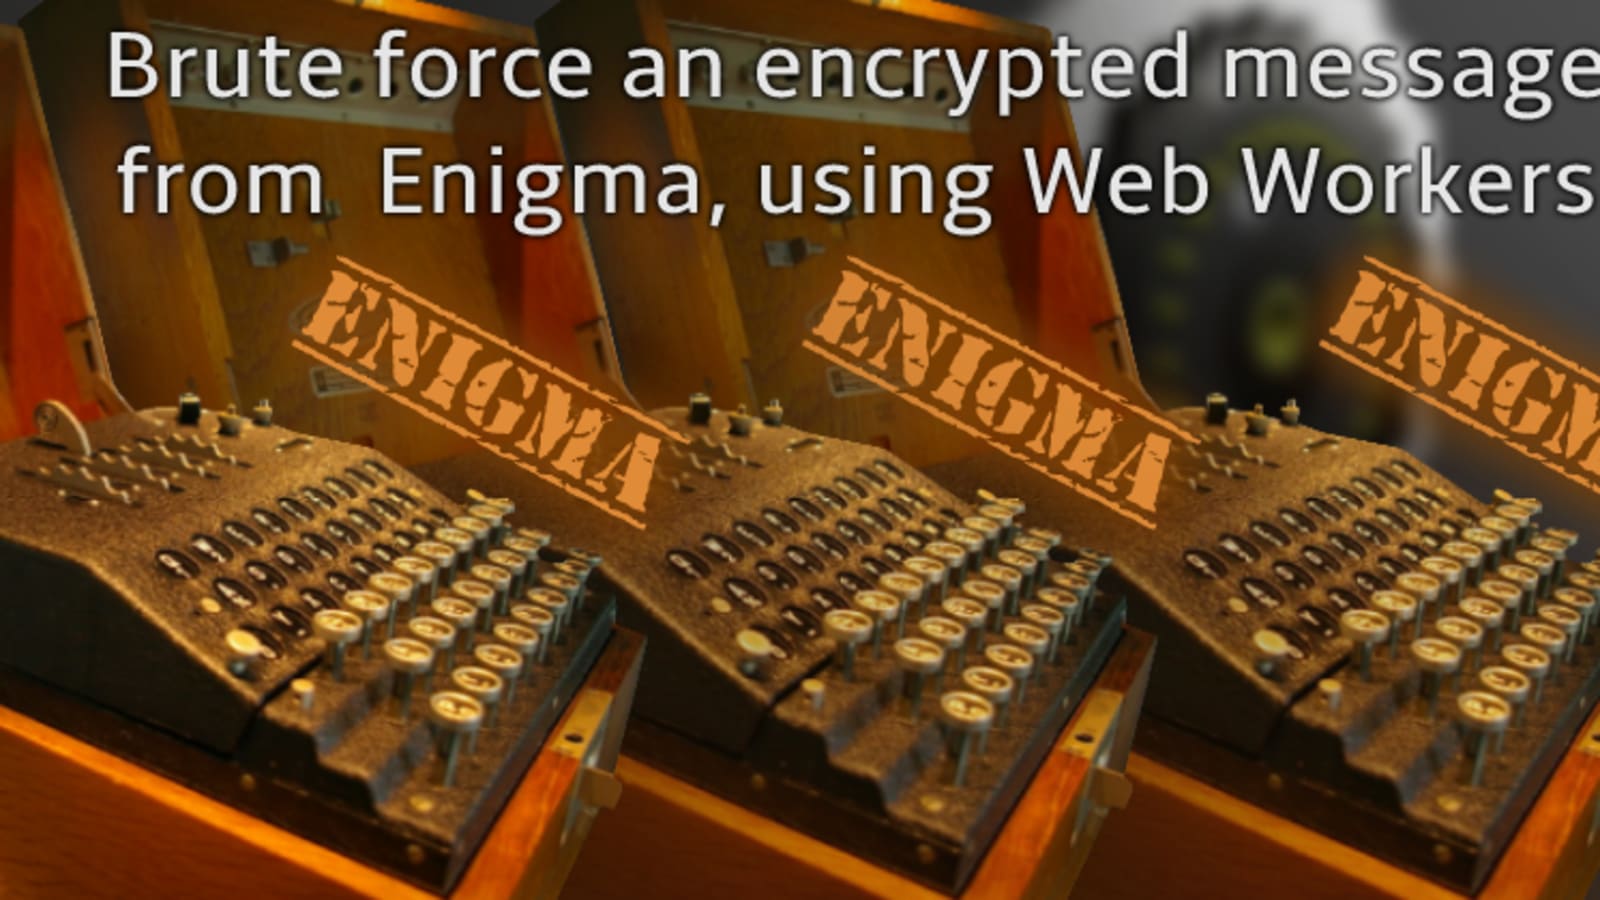 Enigma Web